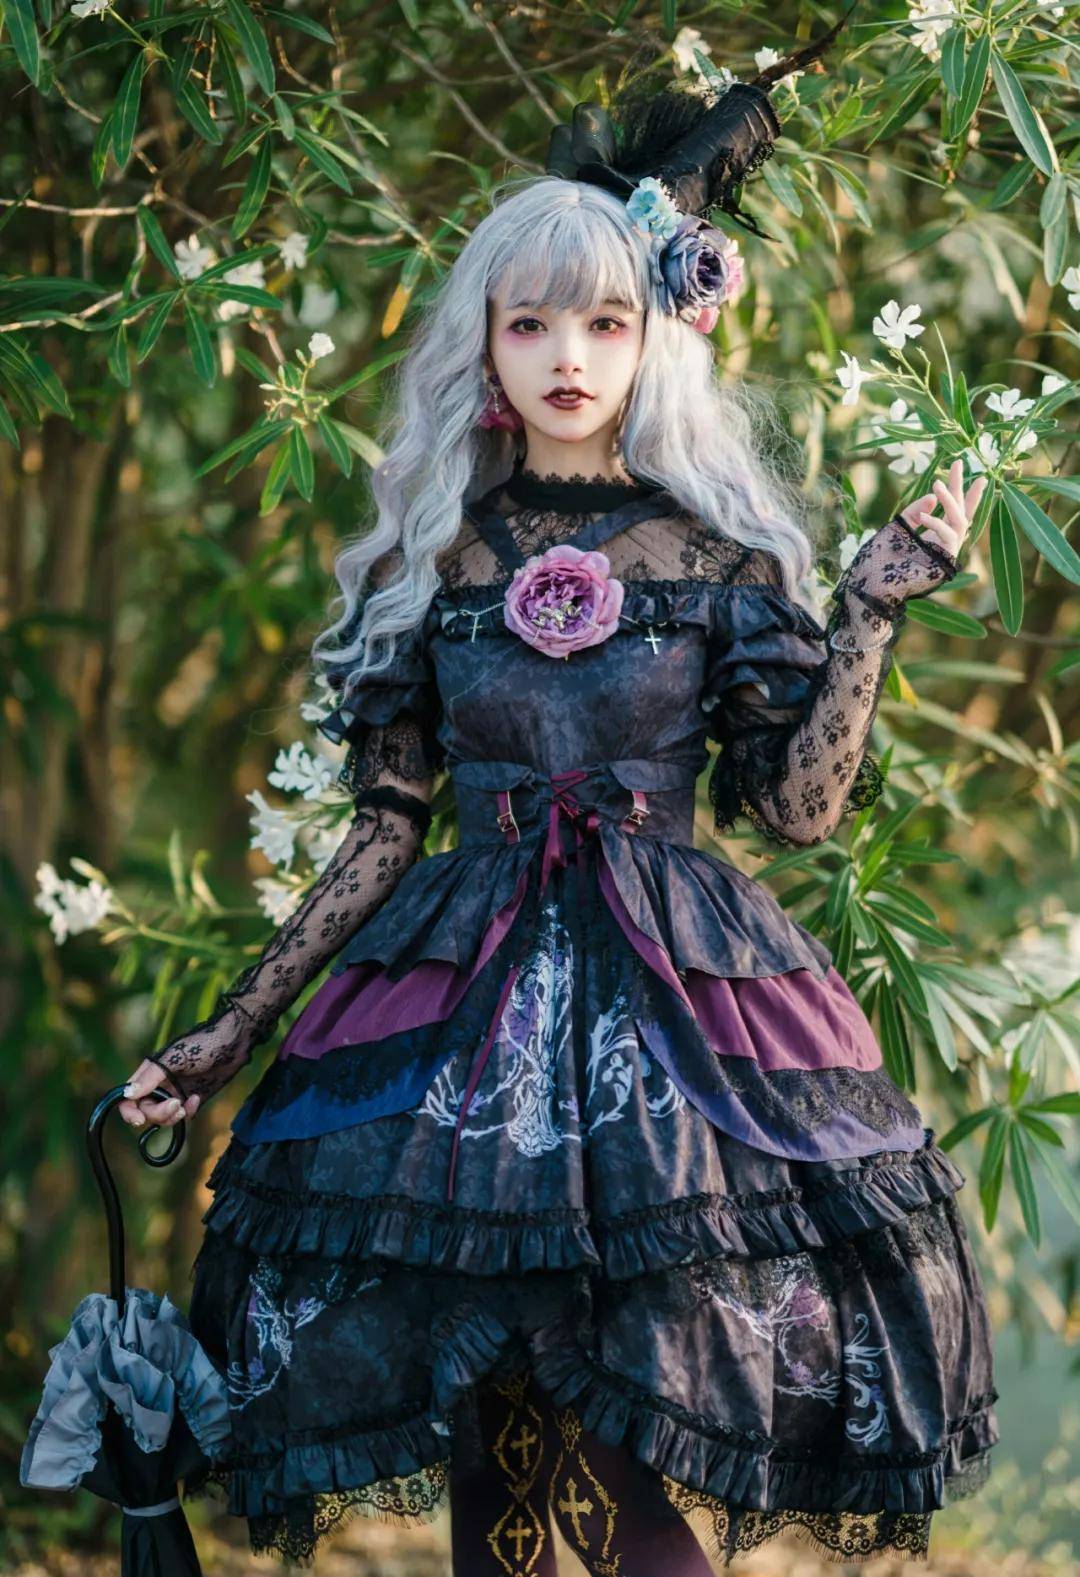 日本lolita文化究竟是个啥这种诞生于日本的小裙子实现了女孩子们公主